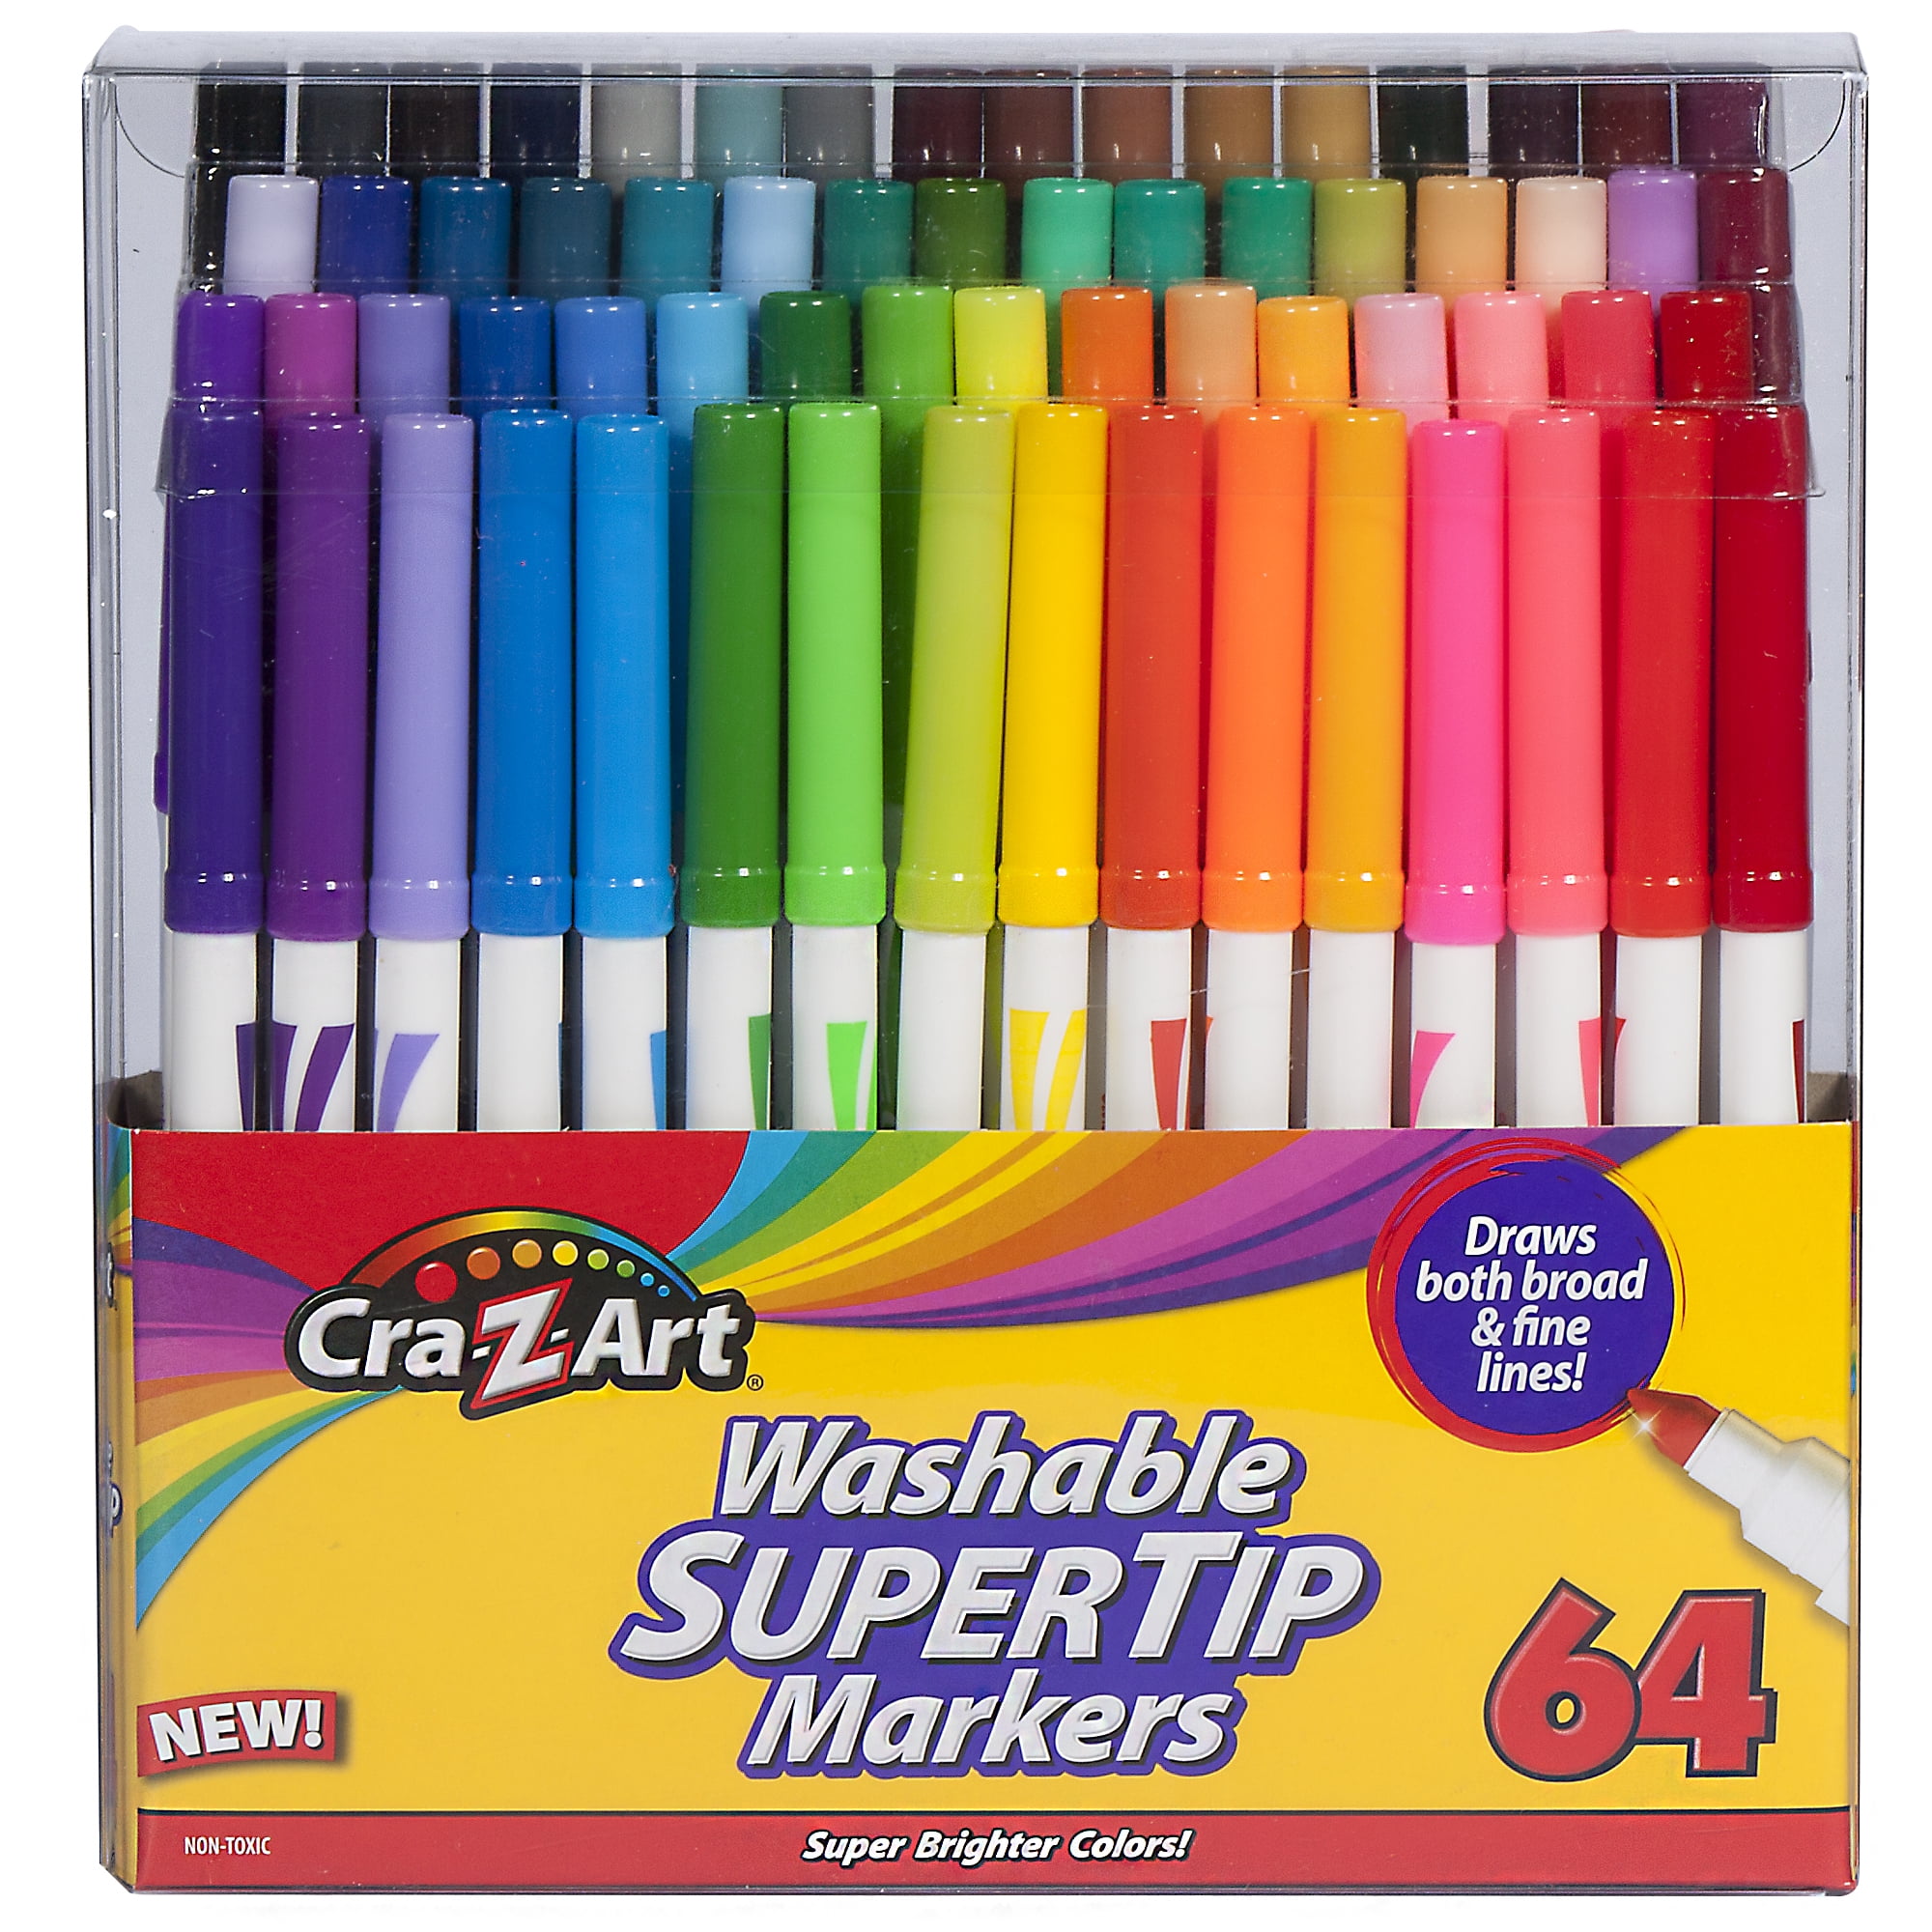 Cra-Z-Art Washable Supertip Markers, Broad/Fine Bullet Tip, Assorted Colors, 64/Set